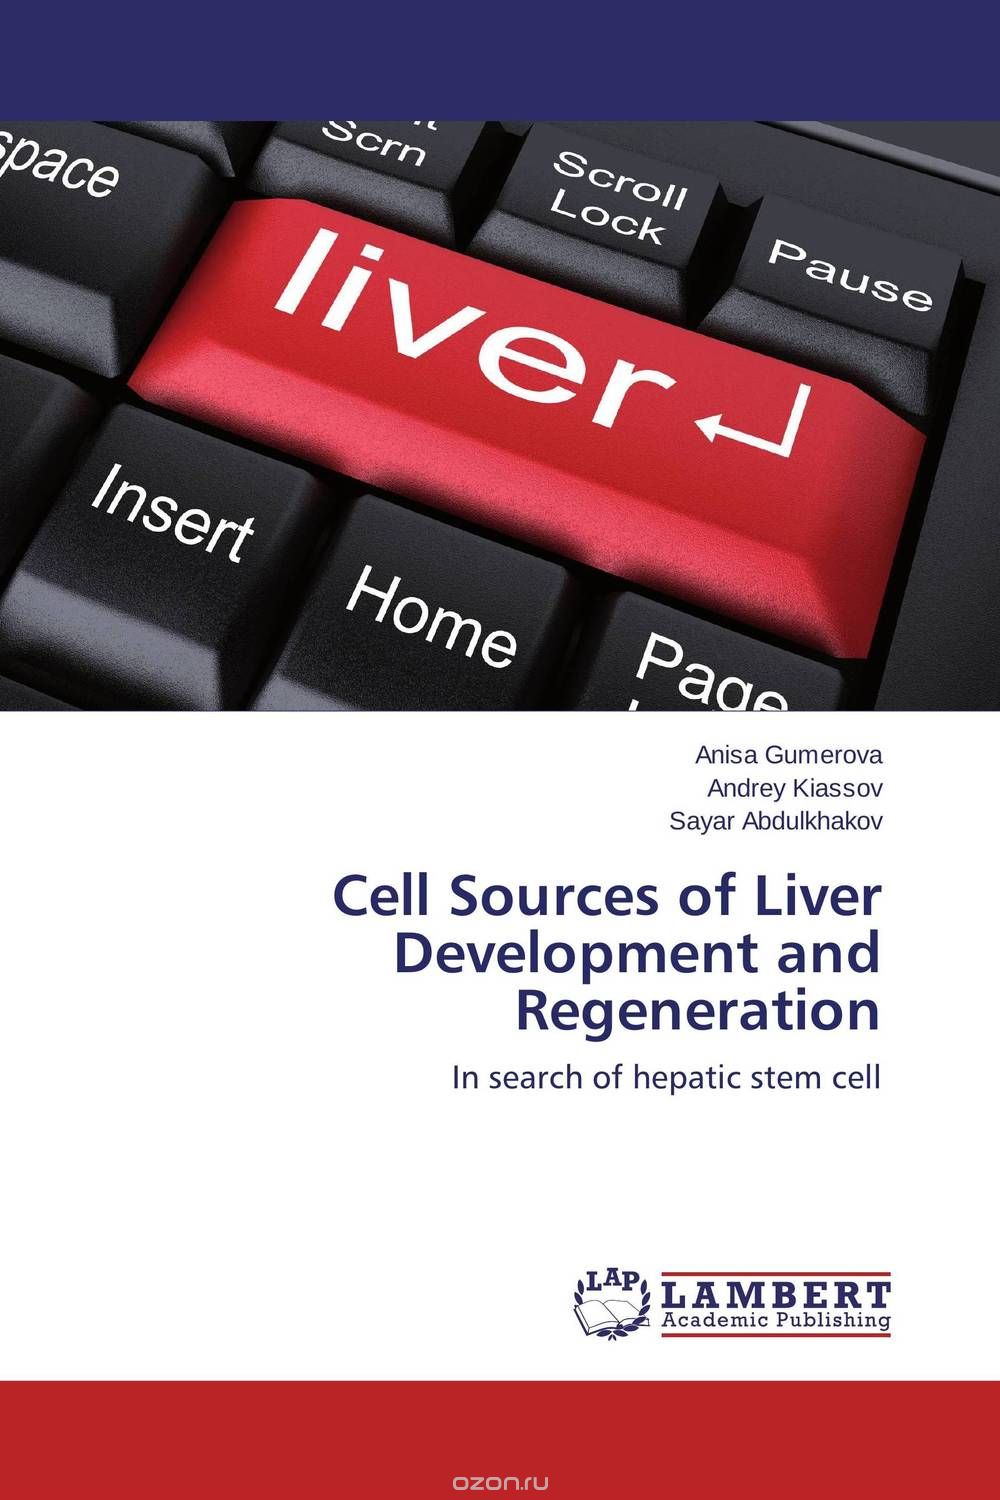 Скачать книгу "Cell Sources of Liver Development and Regeneration"